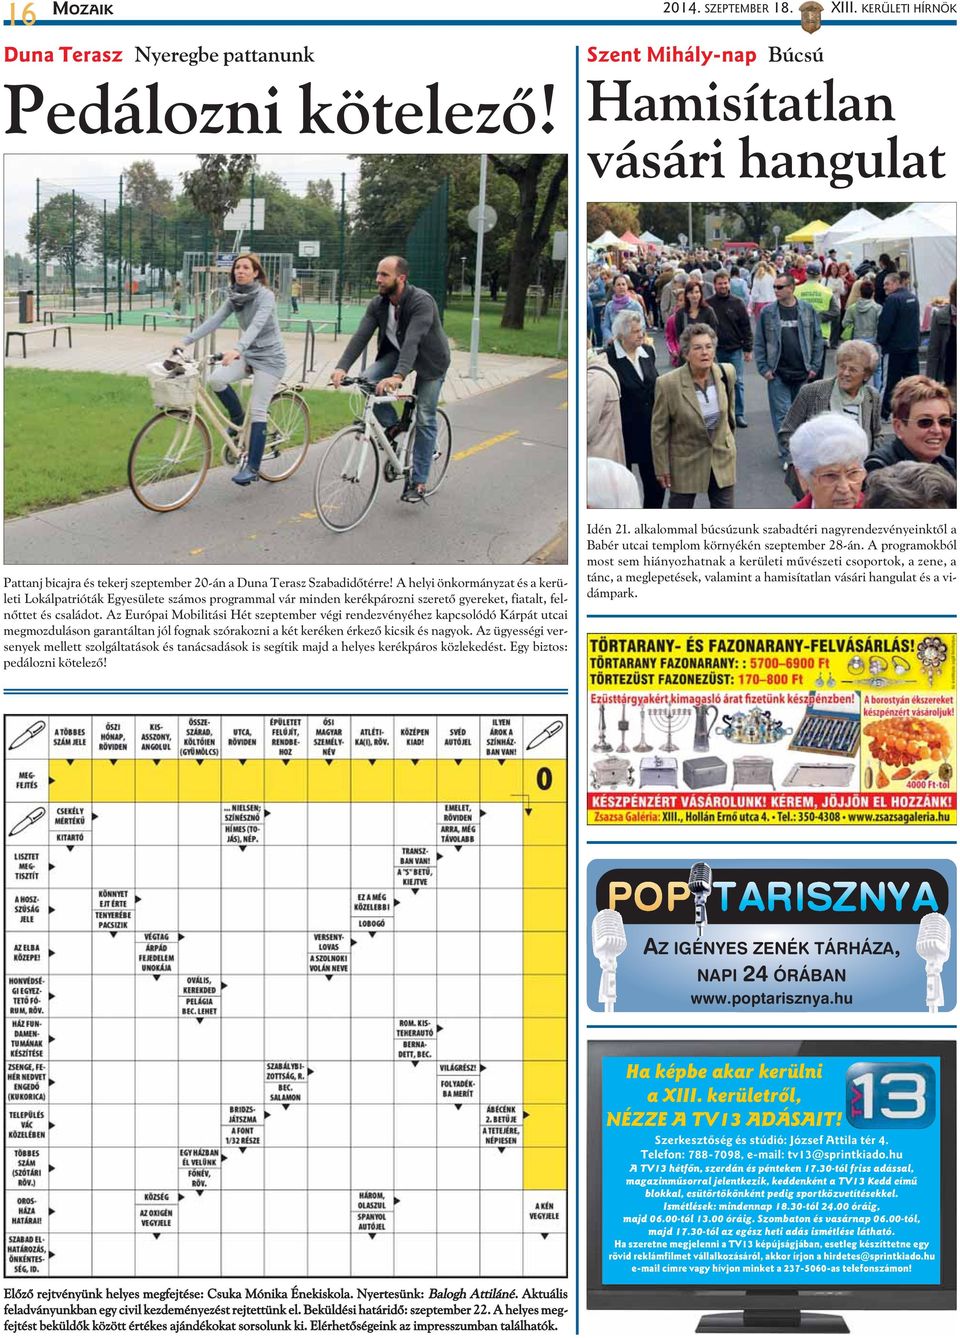 A helyi önkormányzat és a kerületi Lokálpatrióták Egyesülete számos programmal vár minden kerékpározni szeretõ gyereket, fiatalt, felnõttet és családot.